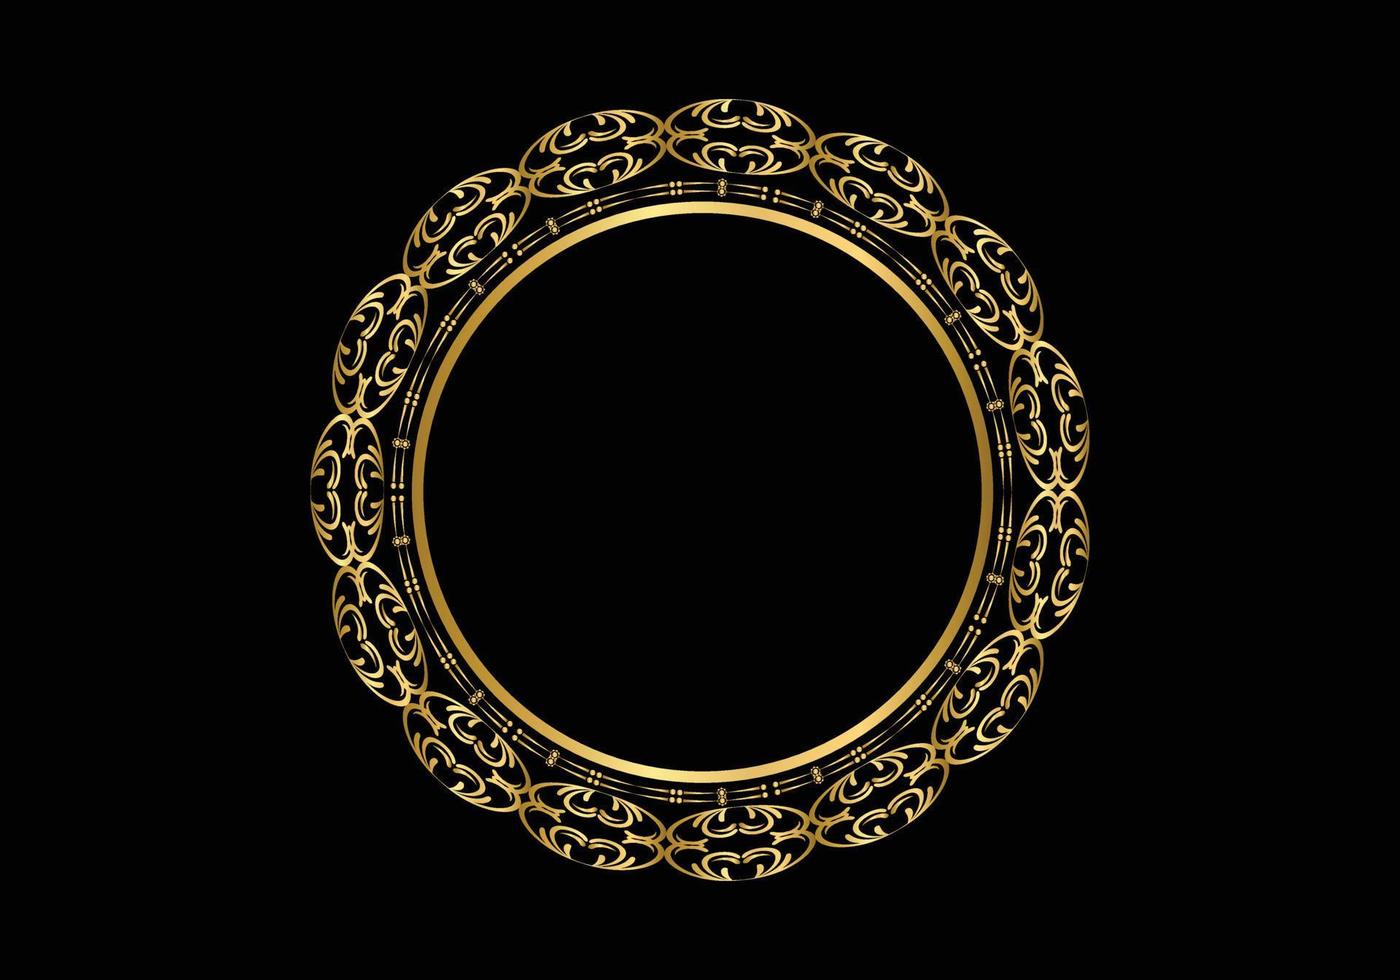 goldener dekorativer runder rahmen für design mit blumenverzierung. eine Vorlage zum Drucken von Postkarten, Einladungen, Büchern. Gold auf schwarzem Hintergrund. vektor